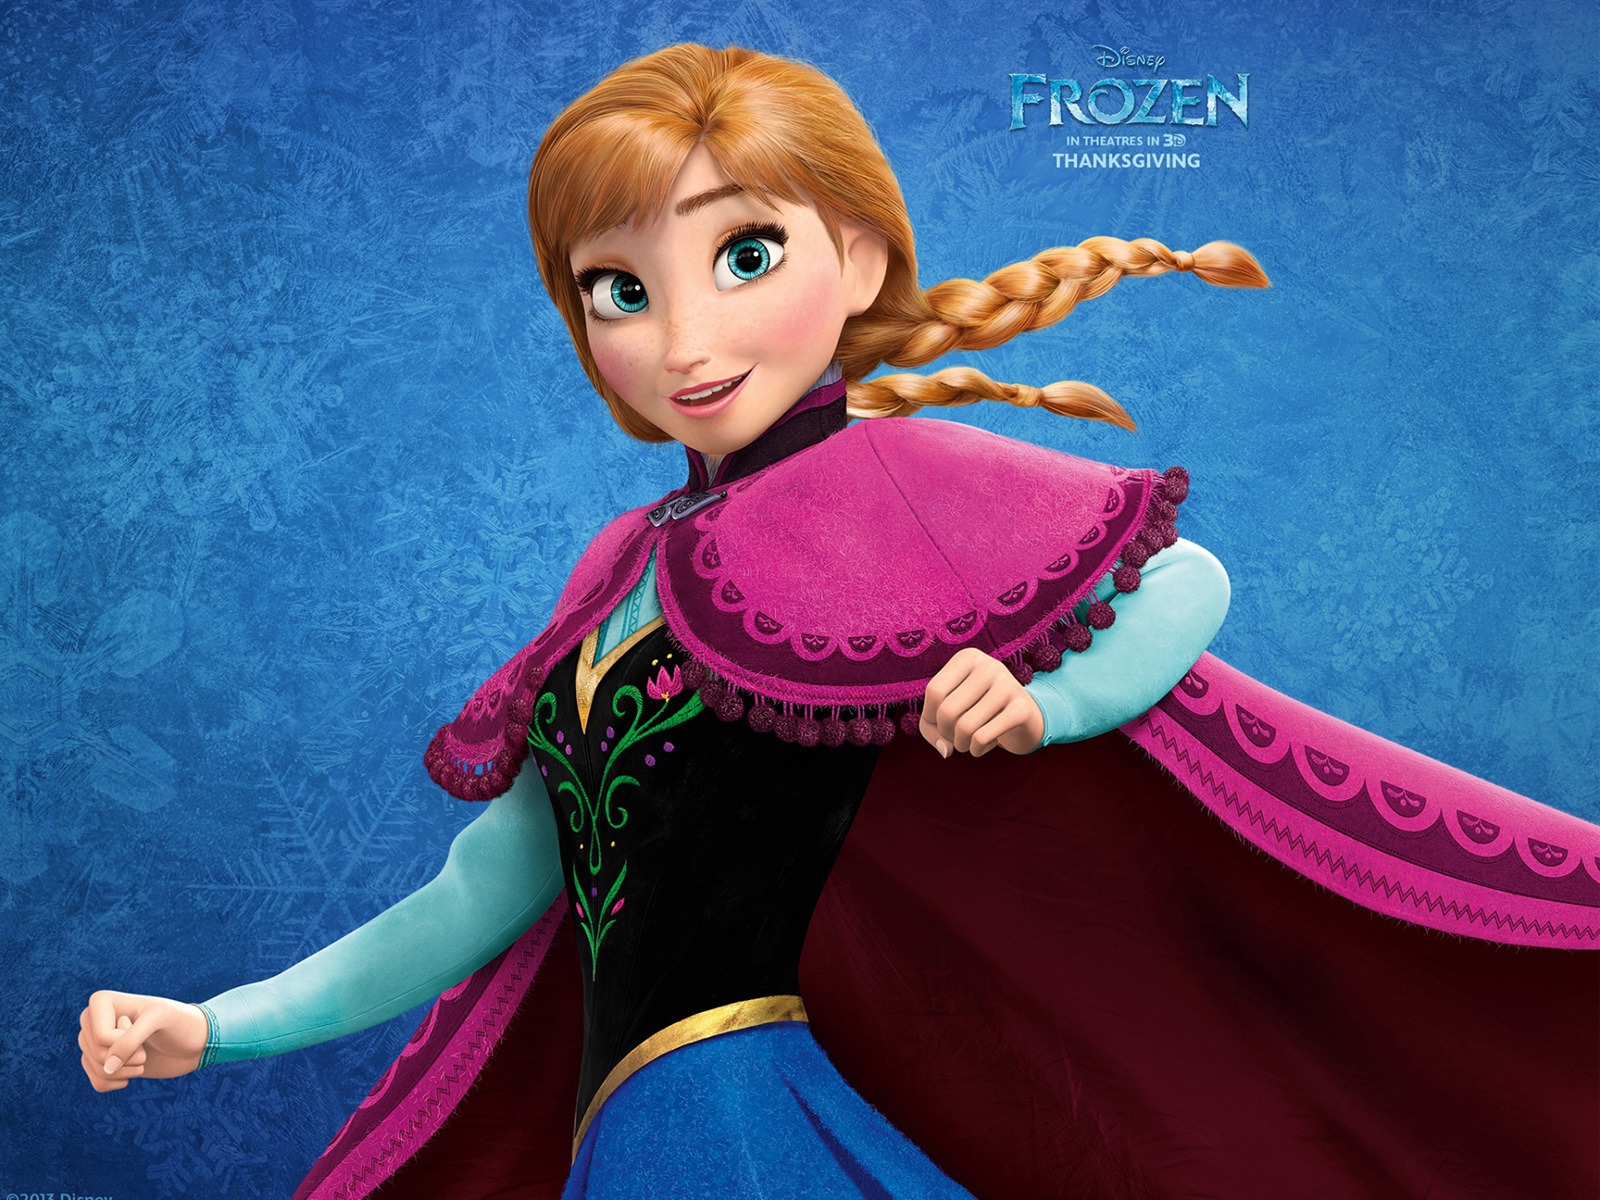 Frozen Anna for 1600 x 1200 resolution